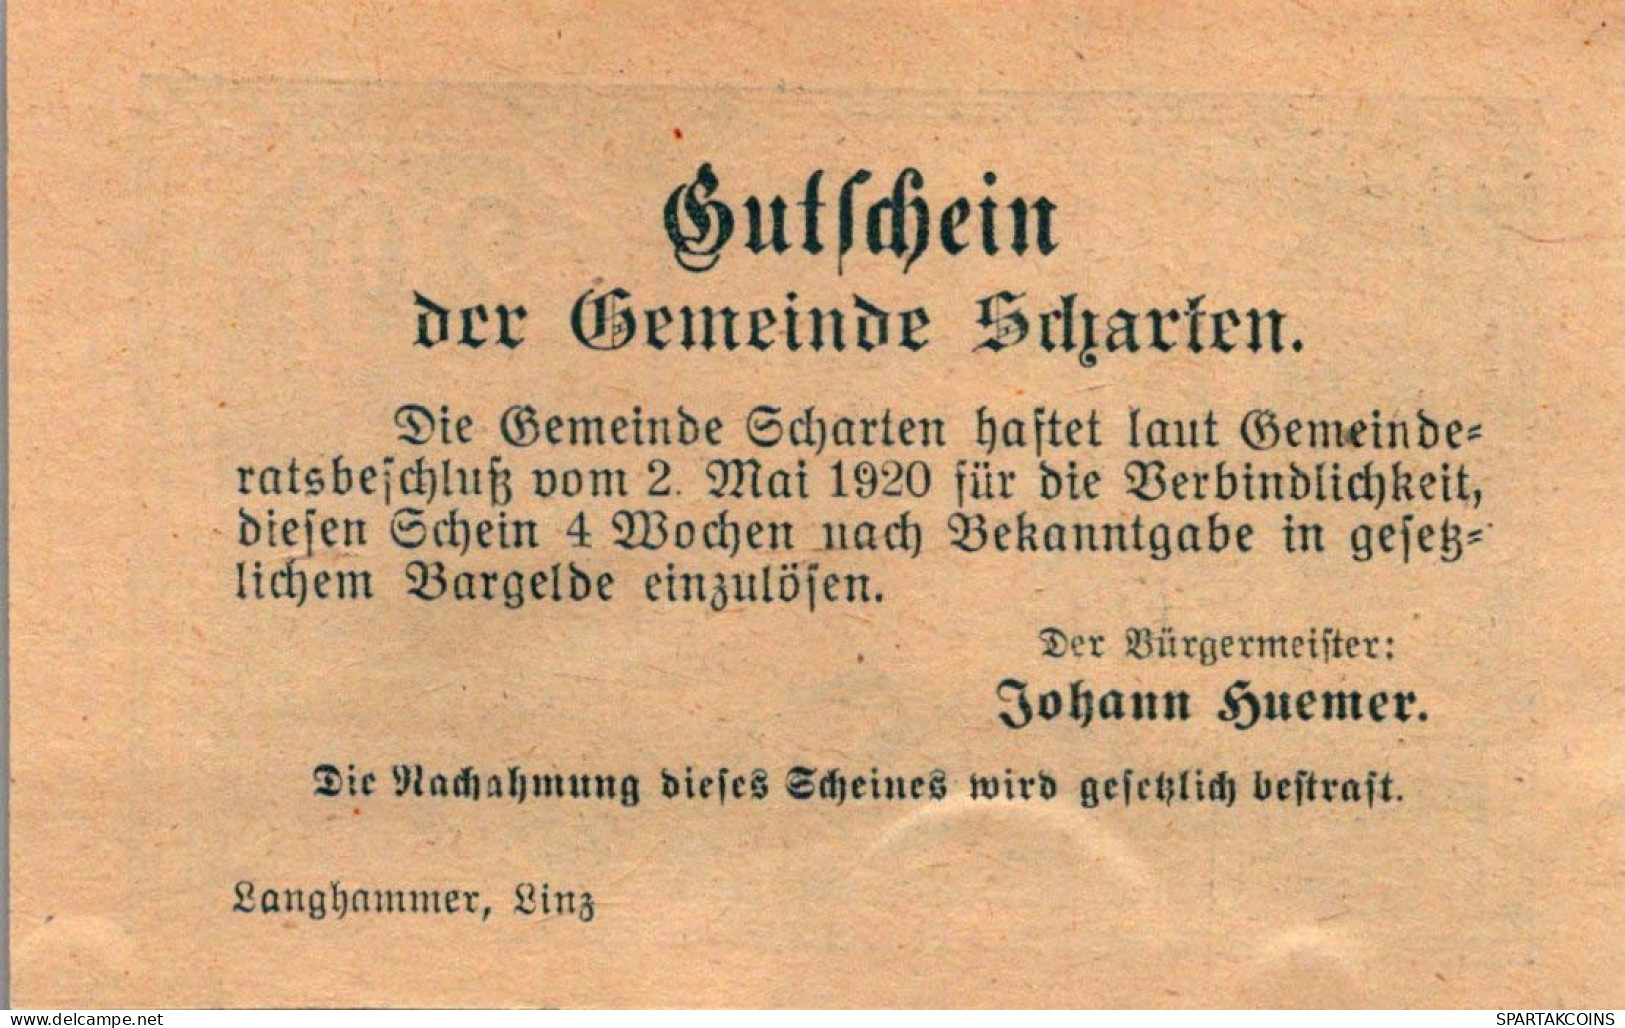 20 HELLER 1920 Stadt SCHARTEN Oberösterreich Österreich Notgeld Banknote #PE713 - [11] Emissions Locales